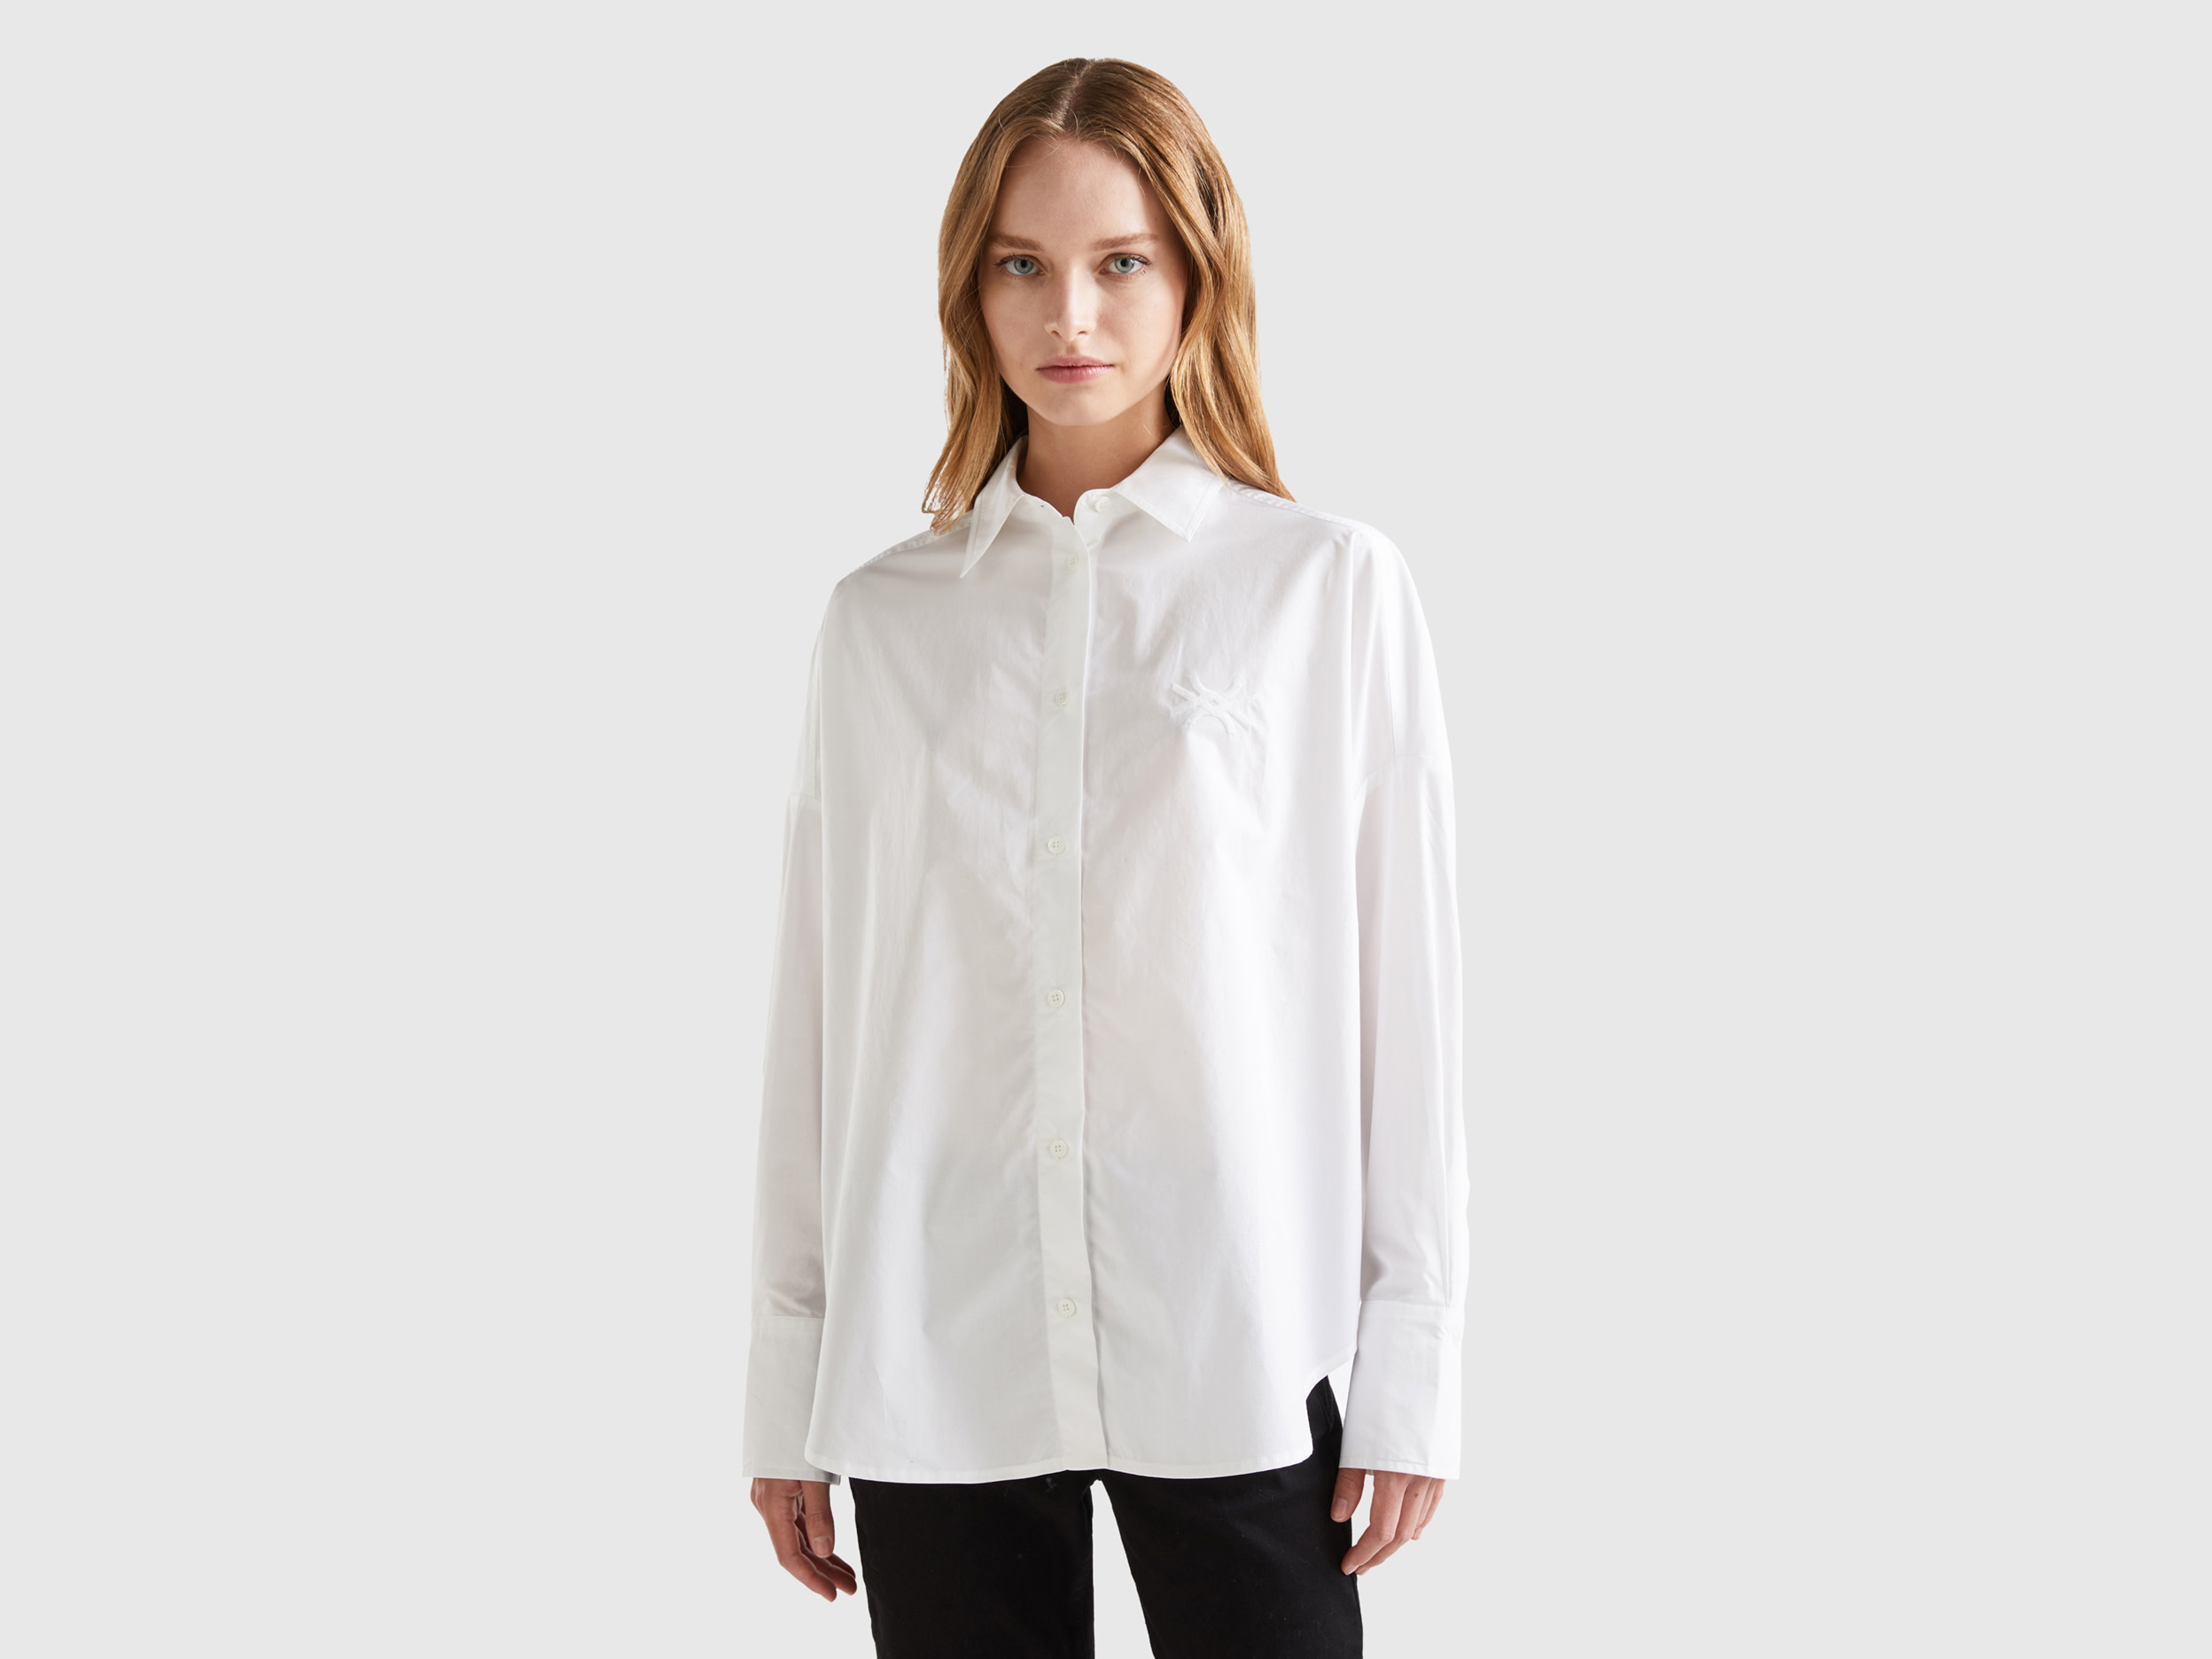 Benetton, Oversized 100% Cotton Shirt, size XXS, White, Women